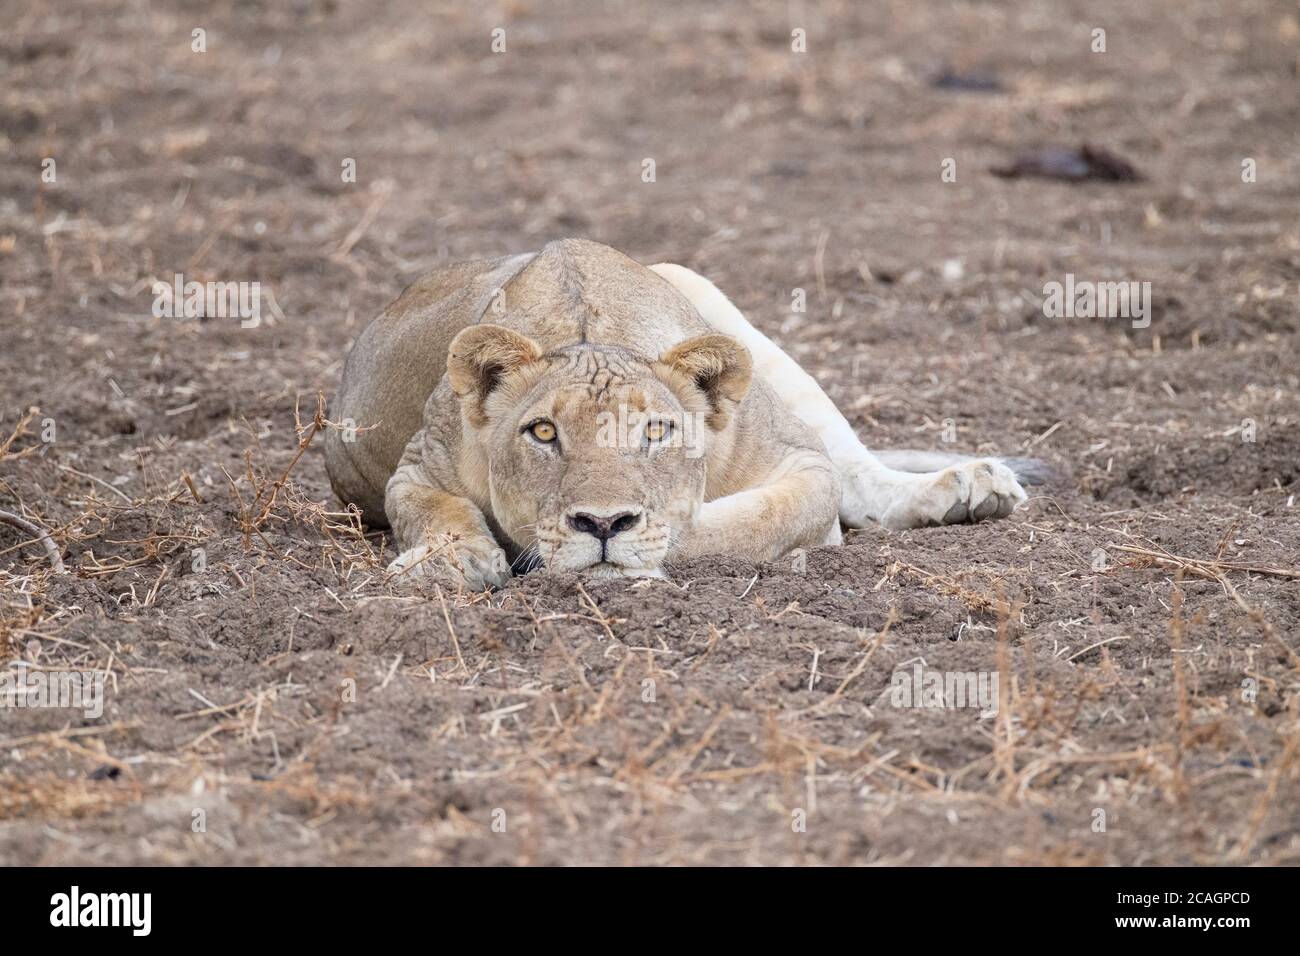 Die Löwin Panthera leo starrte mit dem Gesicht in die Kamera. South Luangwa National Park in Sambia, Afrika. Stockfoto